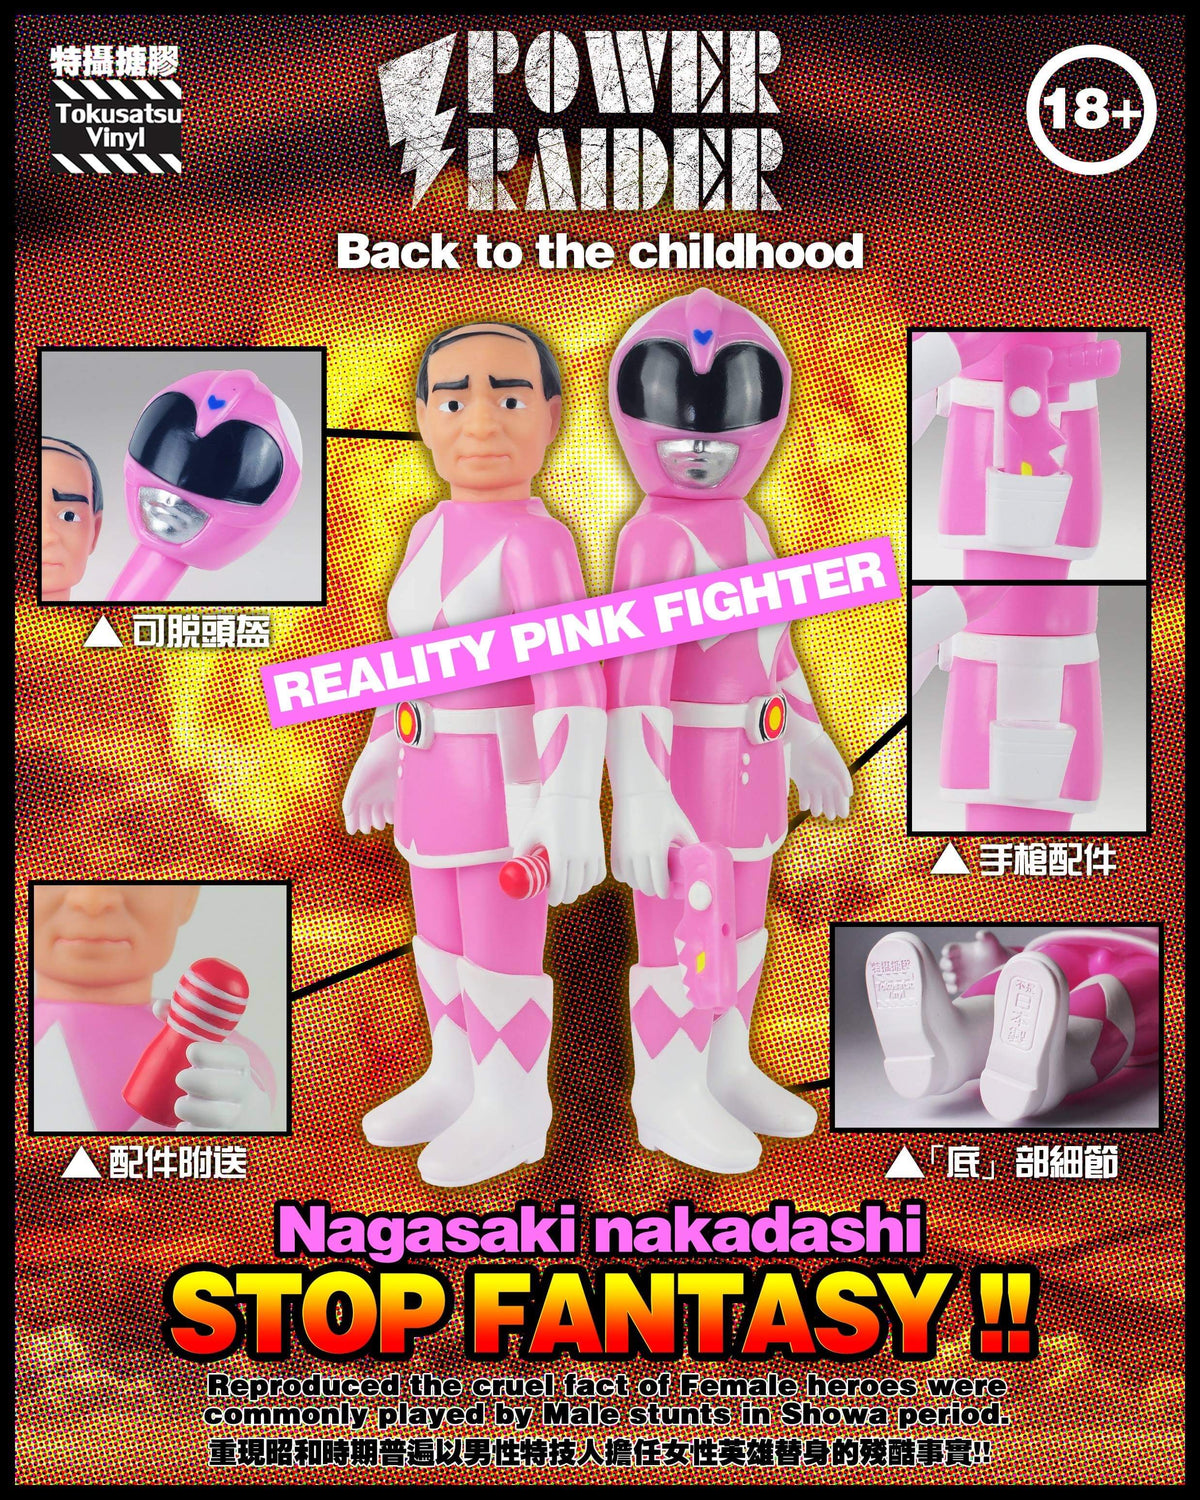 Power Raider Pink Fighter Vinyl